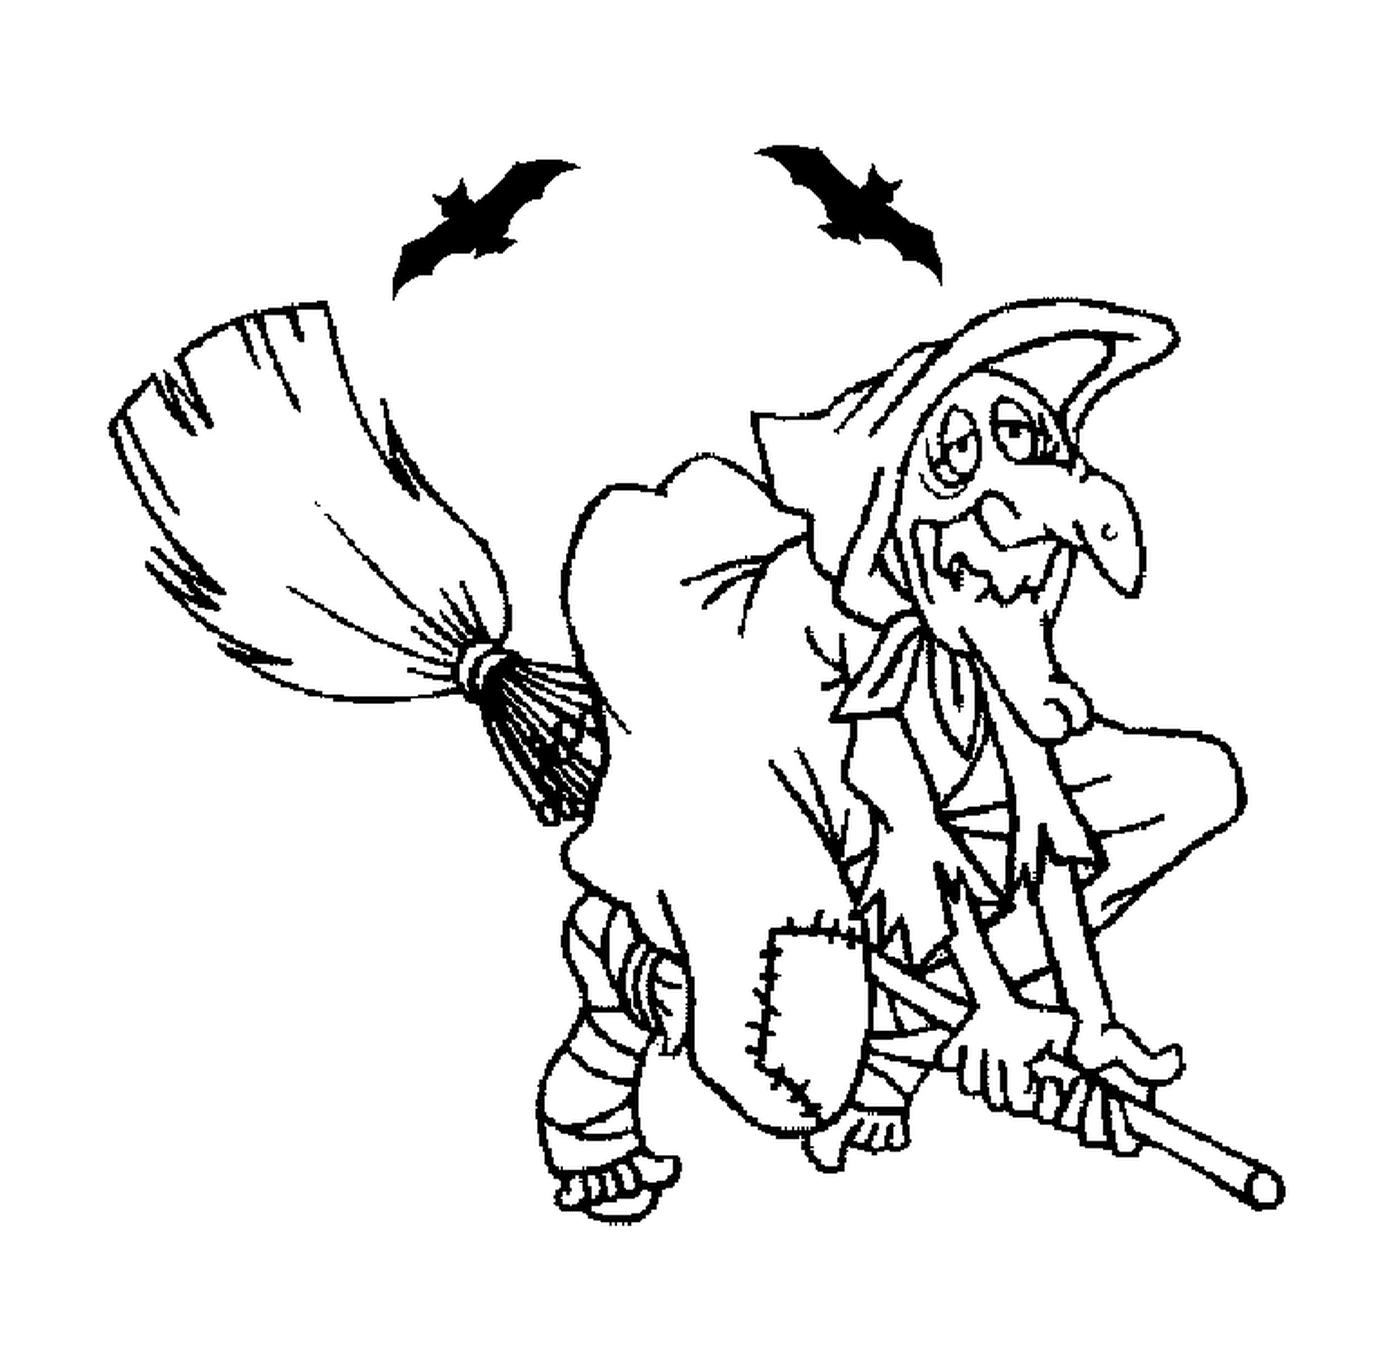  velha bruxa em uma vassoura voadora com dois morcegos 